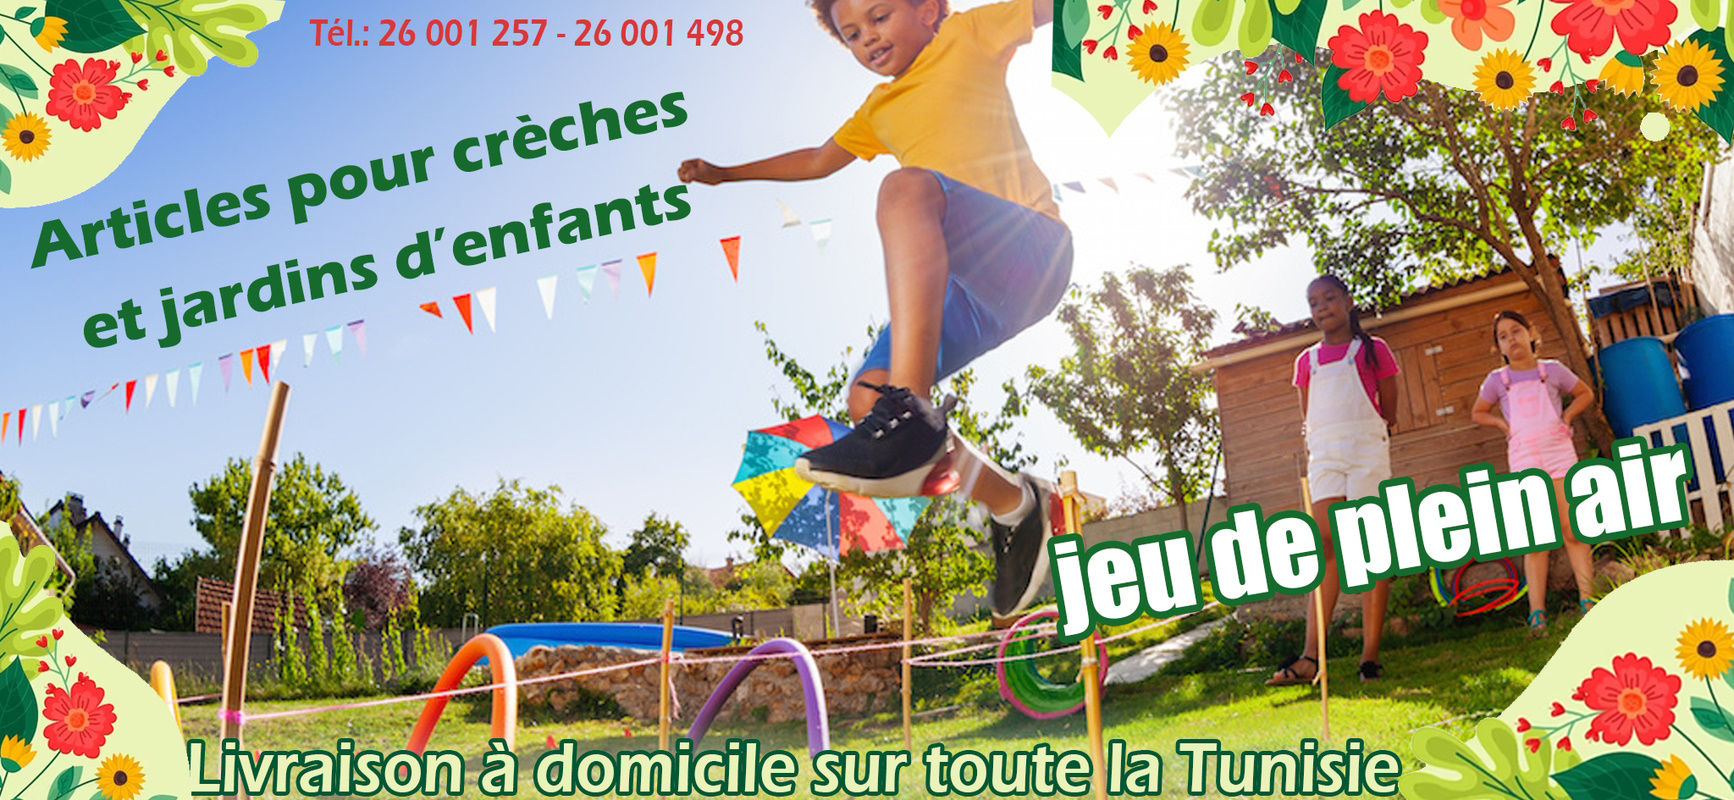 Magasin de jouets en ligne - Livraison sur toute la Tunisie -  ABRACADABRA-Achetez PORTE BEBE INFANTINO 4EN 1 chez ABRACADABRA à 185,000 DT